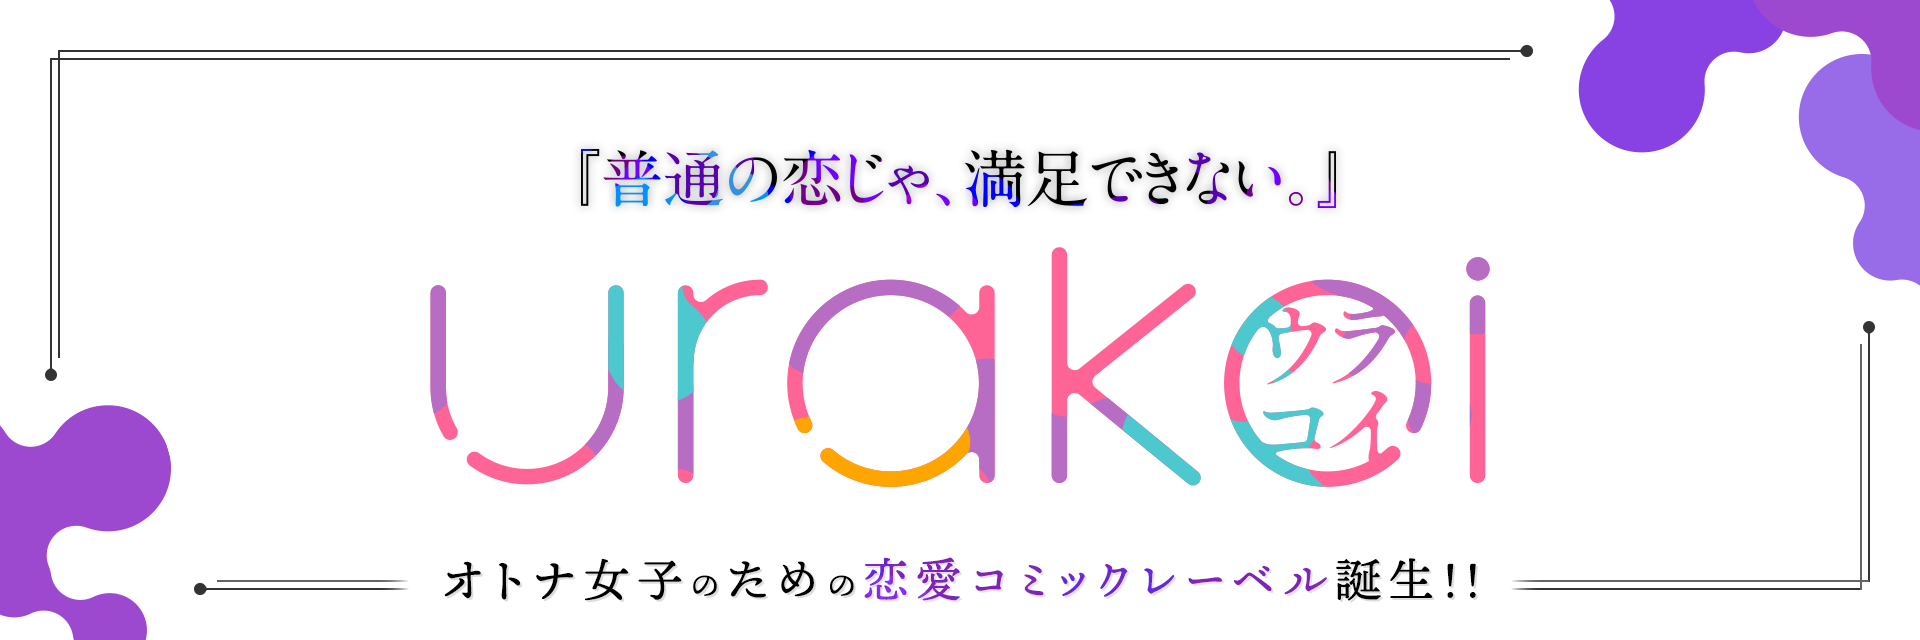 『普通の恋じゃ、満足できない。』urakoi〜ウラコイ〜　オトナ女子のための恋愛コミックレーベル誕生!!